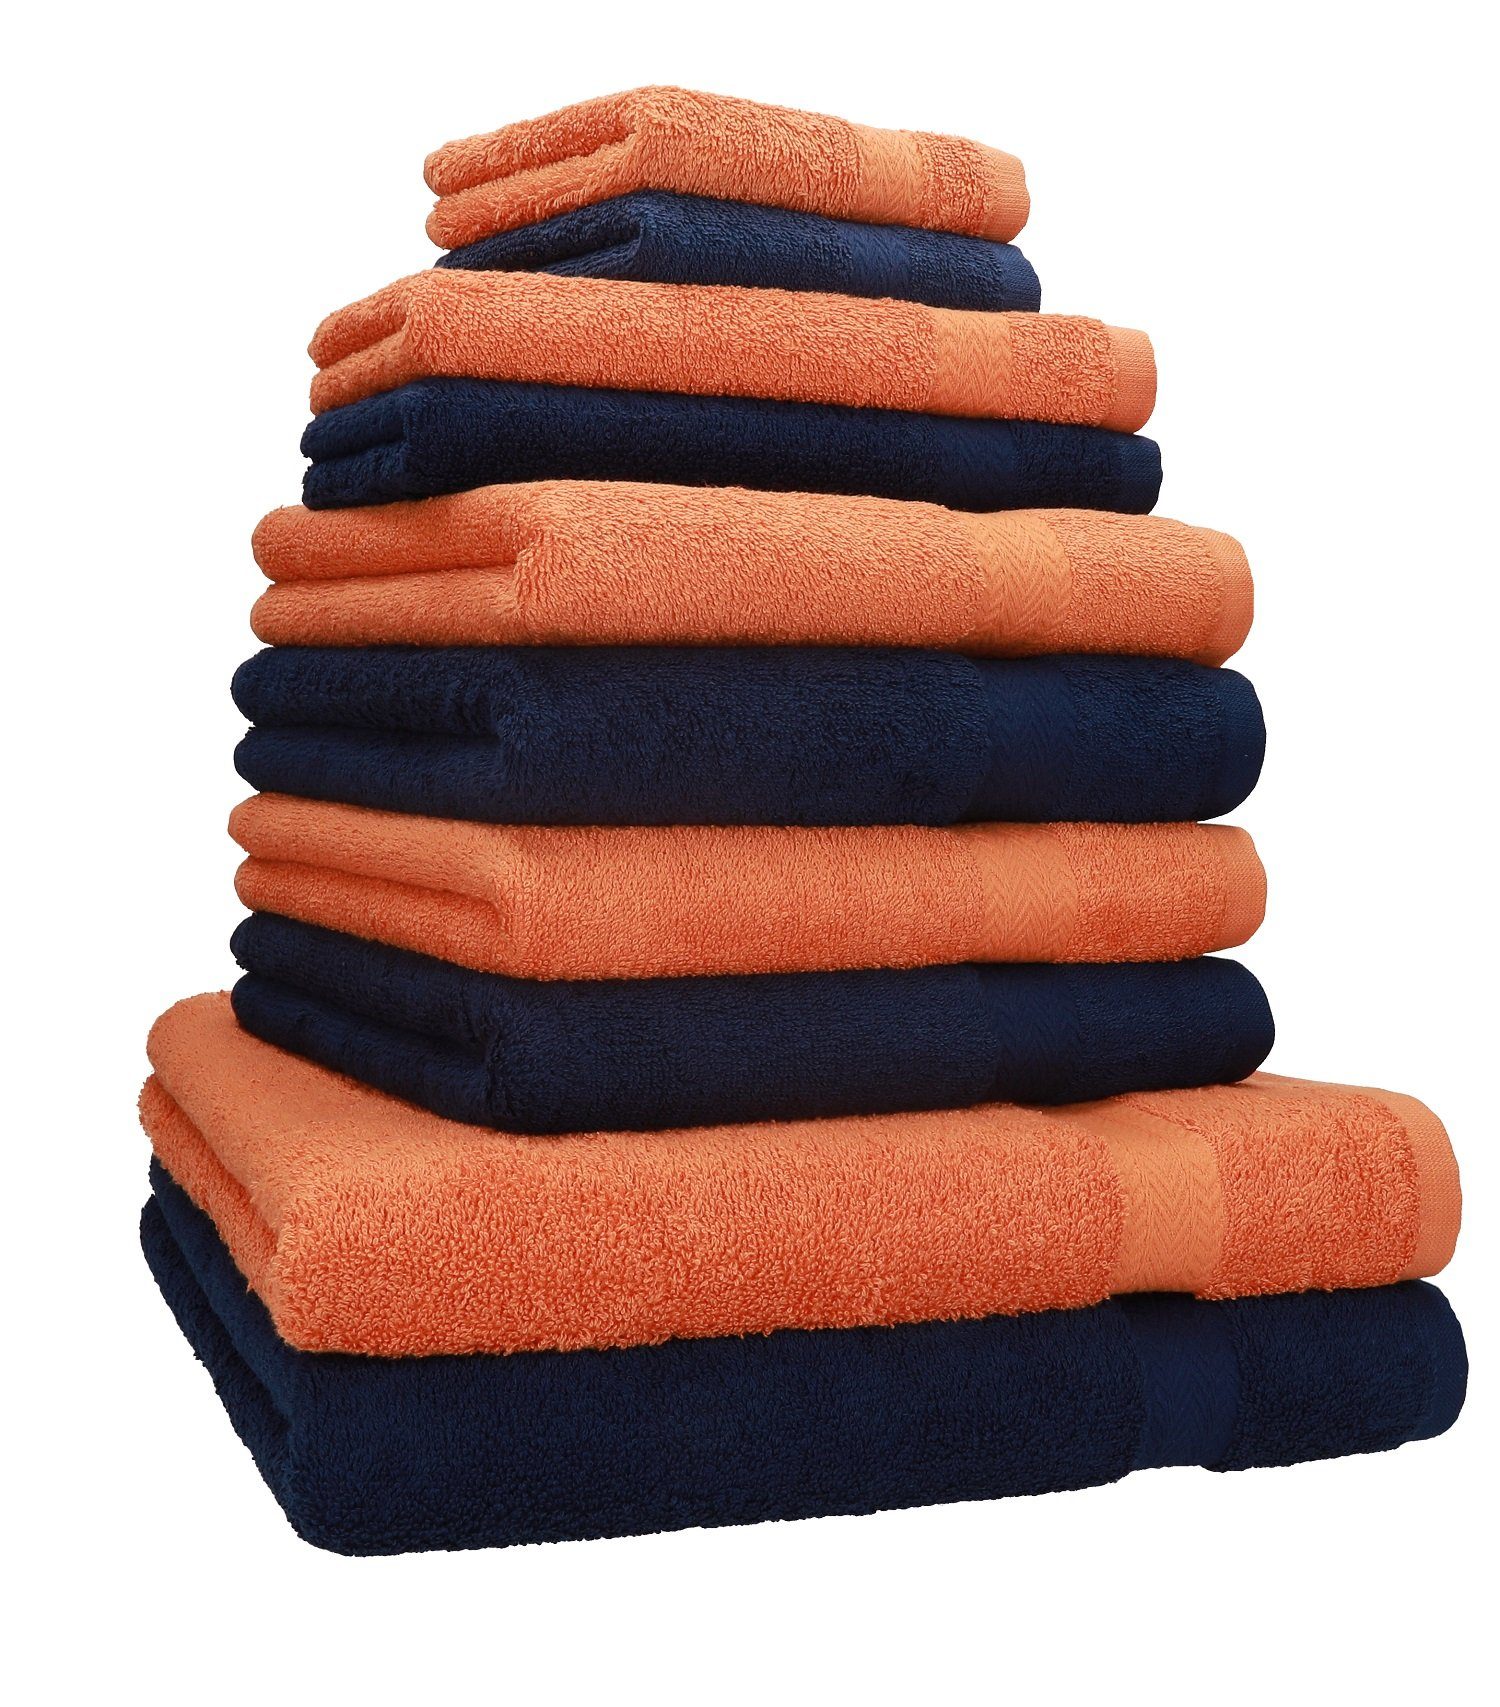 Betz Handtuch Set 10-TLG. Handtücher-Set Classic Farbe orange und dunkelblau, 100% Baumwolle